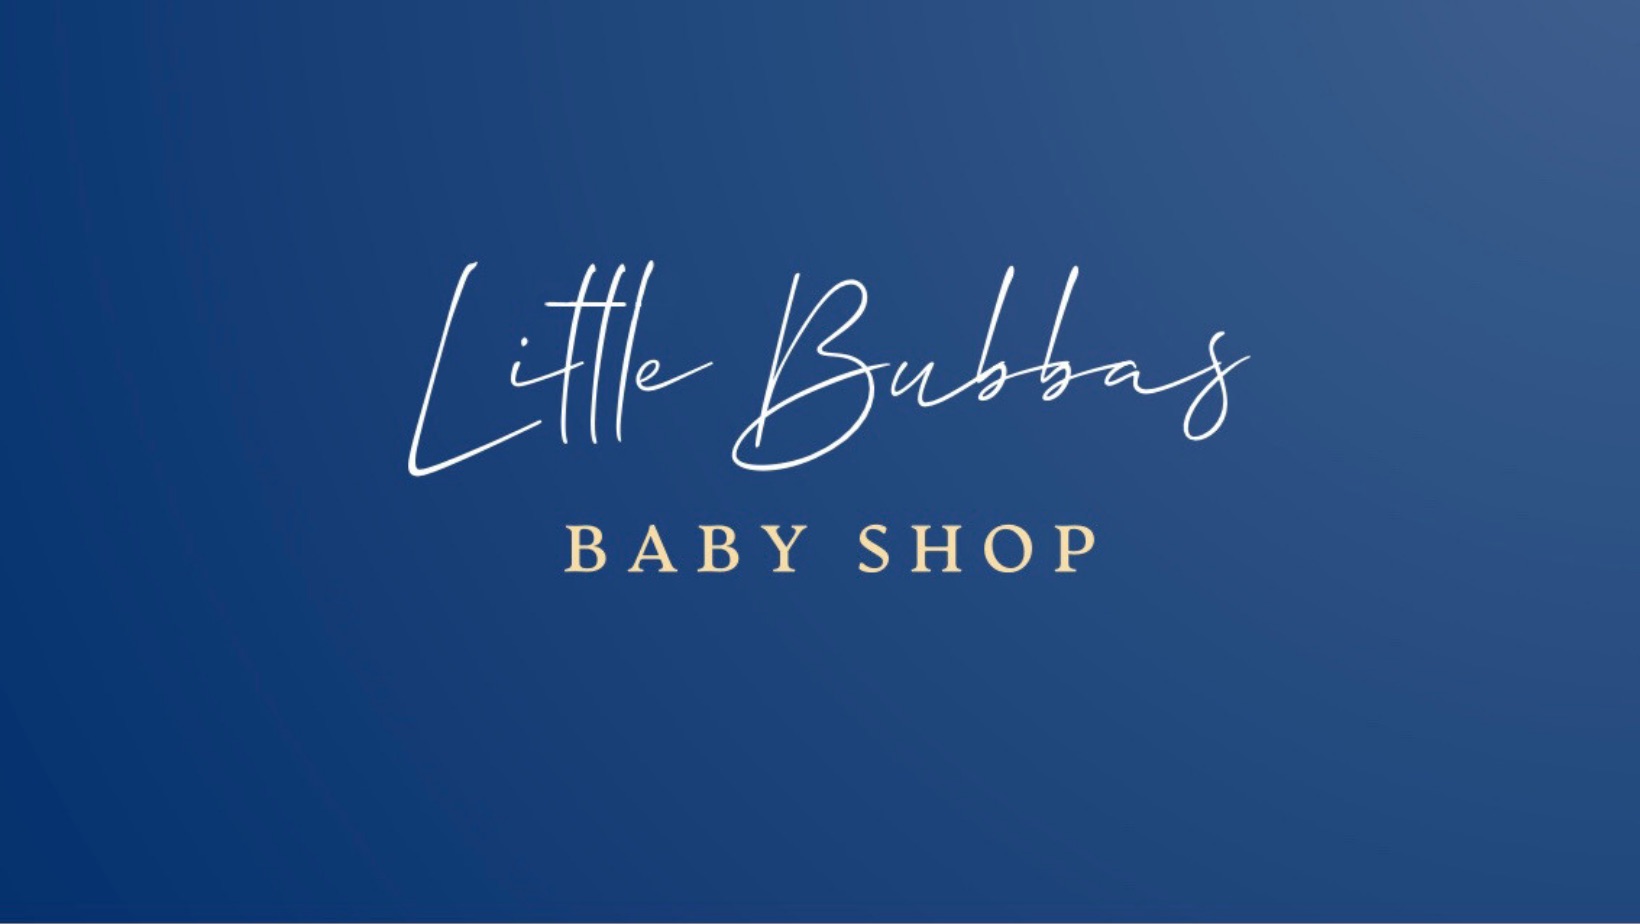 Little Bubbas Baby Shop's logo